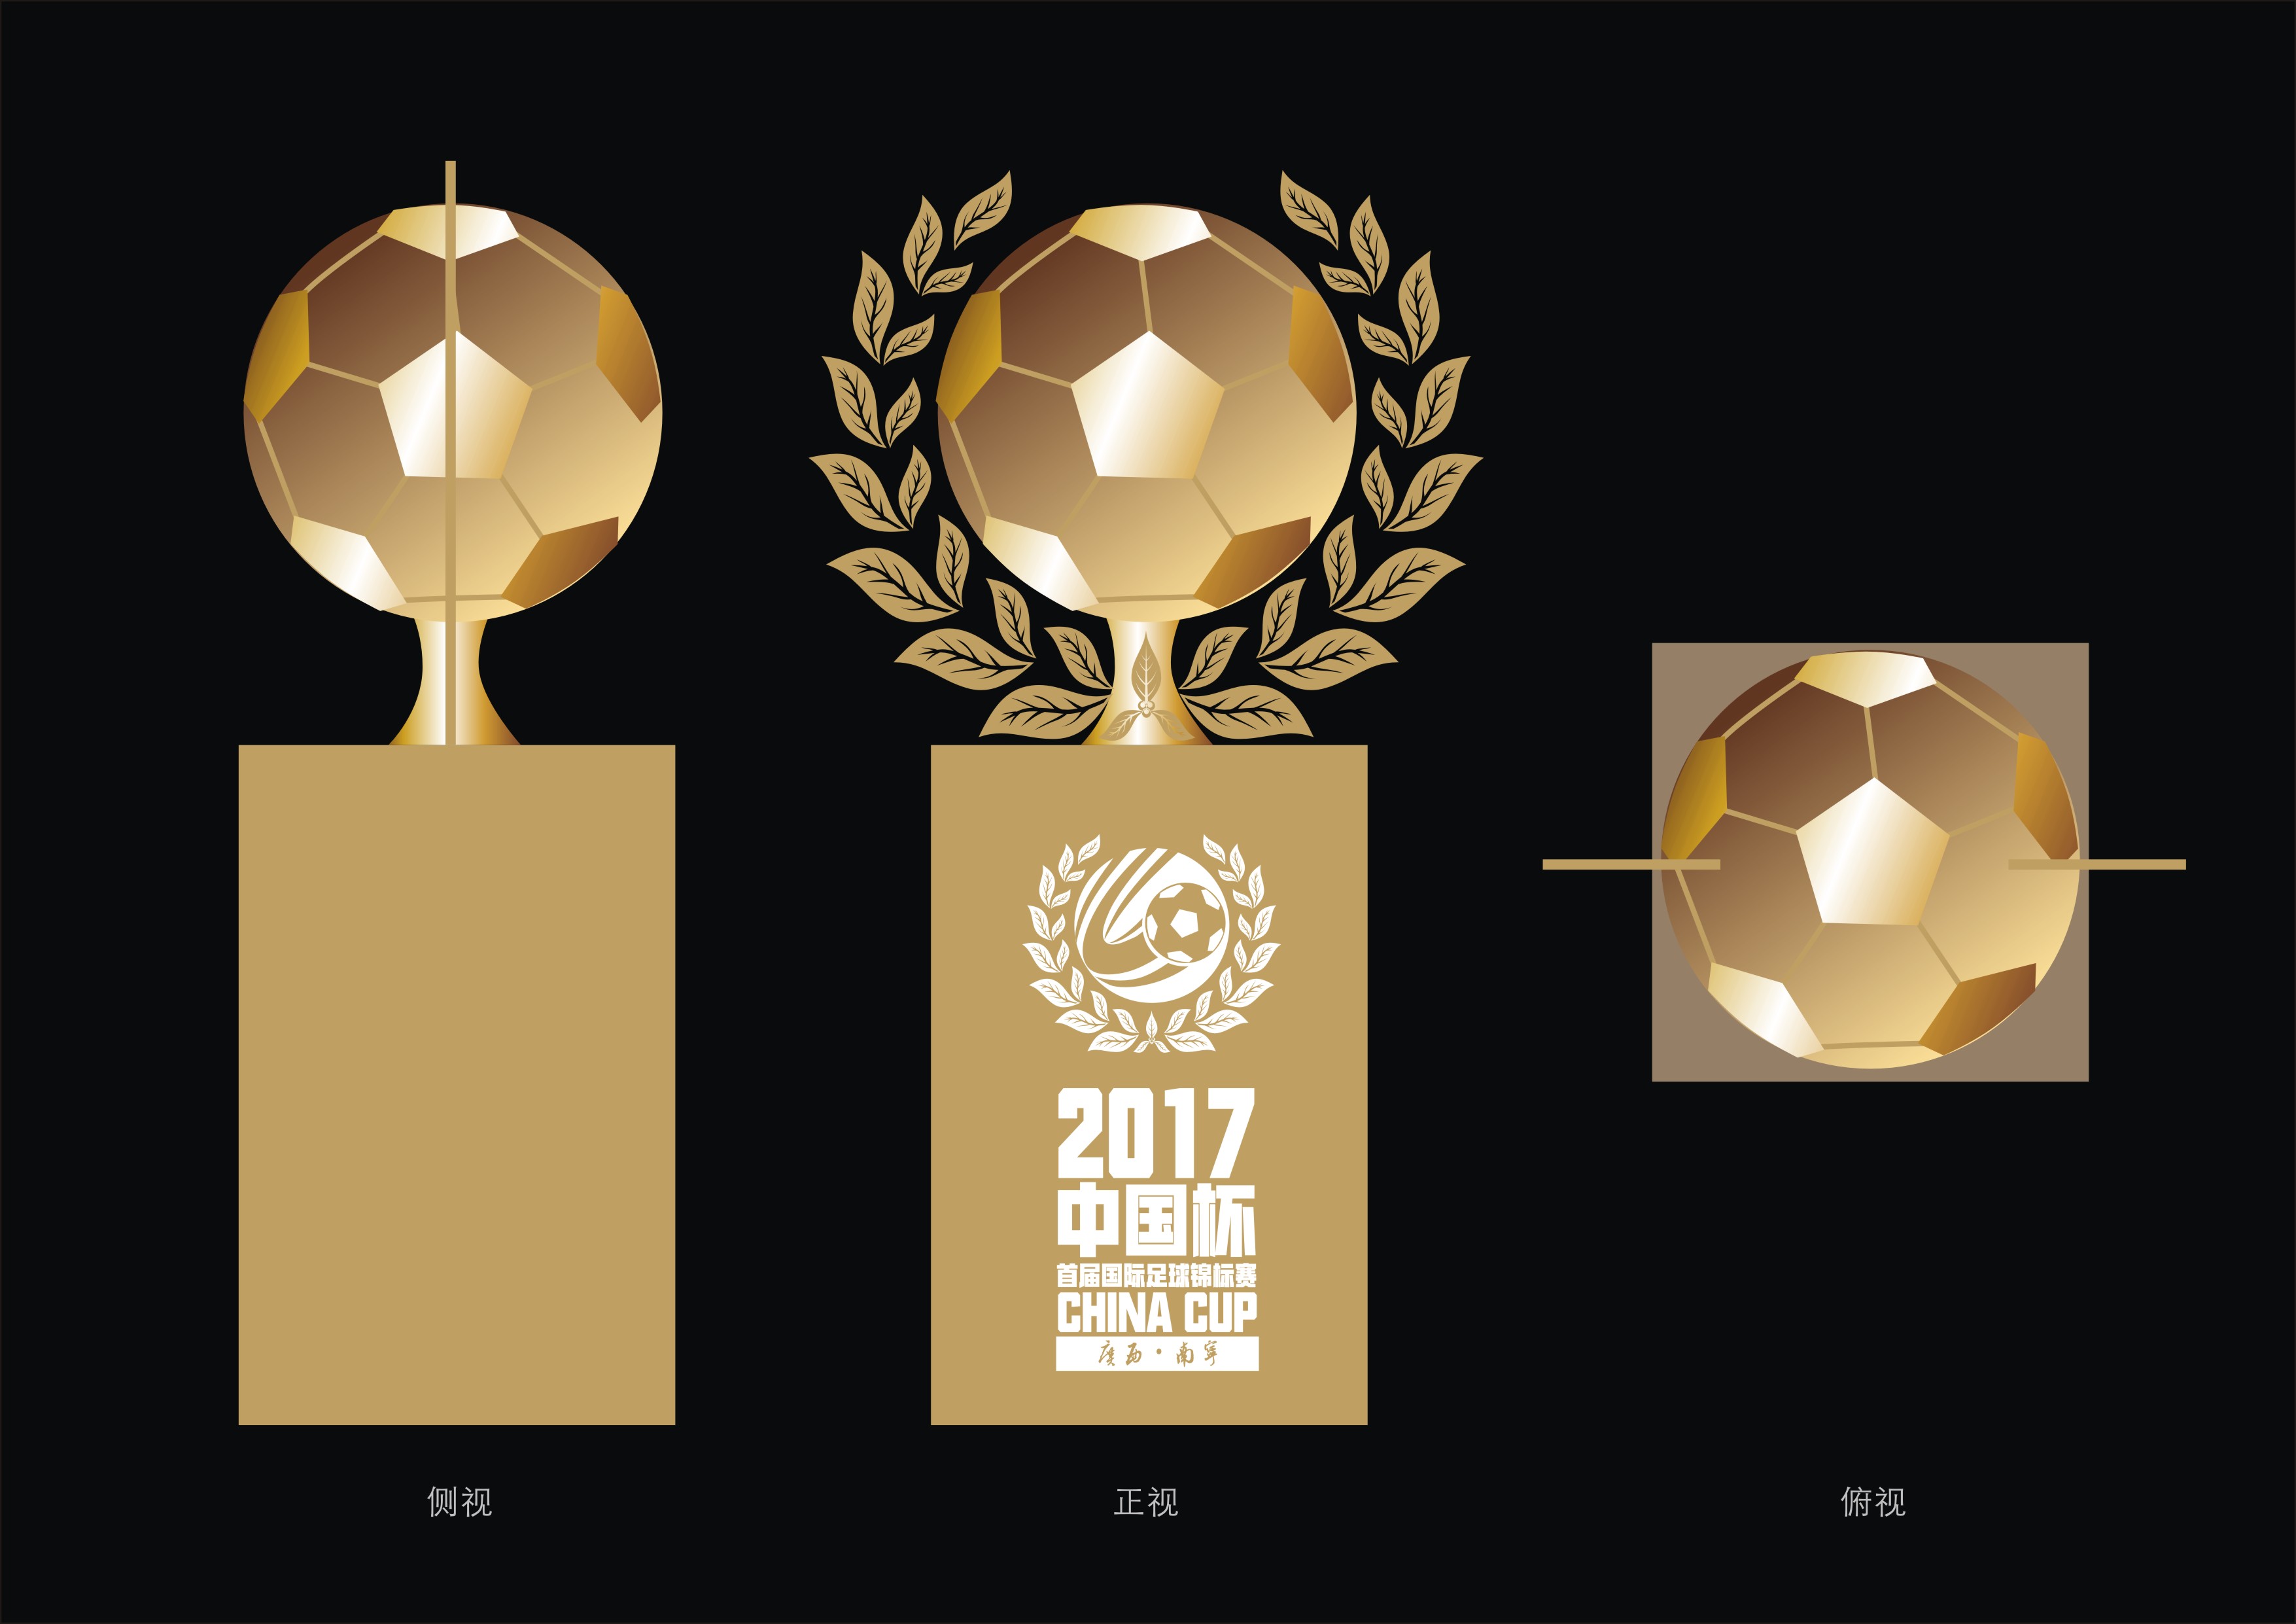 中国杯国际足球锦标赛奖杯设计提案